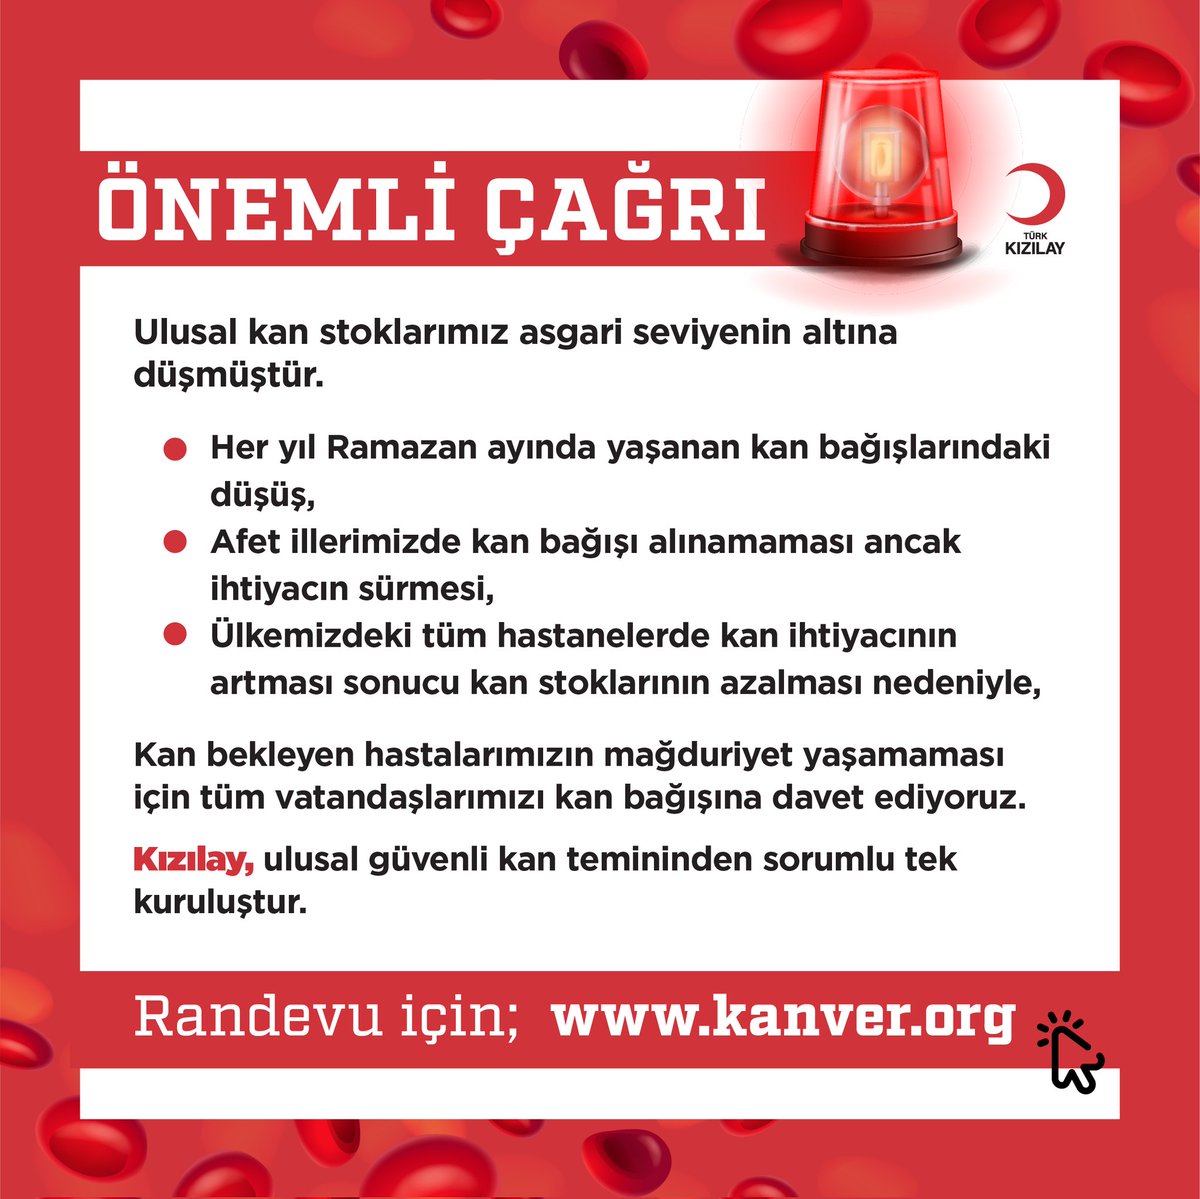 Kan ver can ver 
#TürkKızılayı